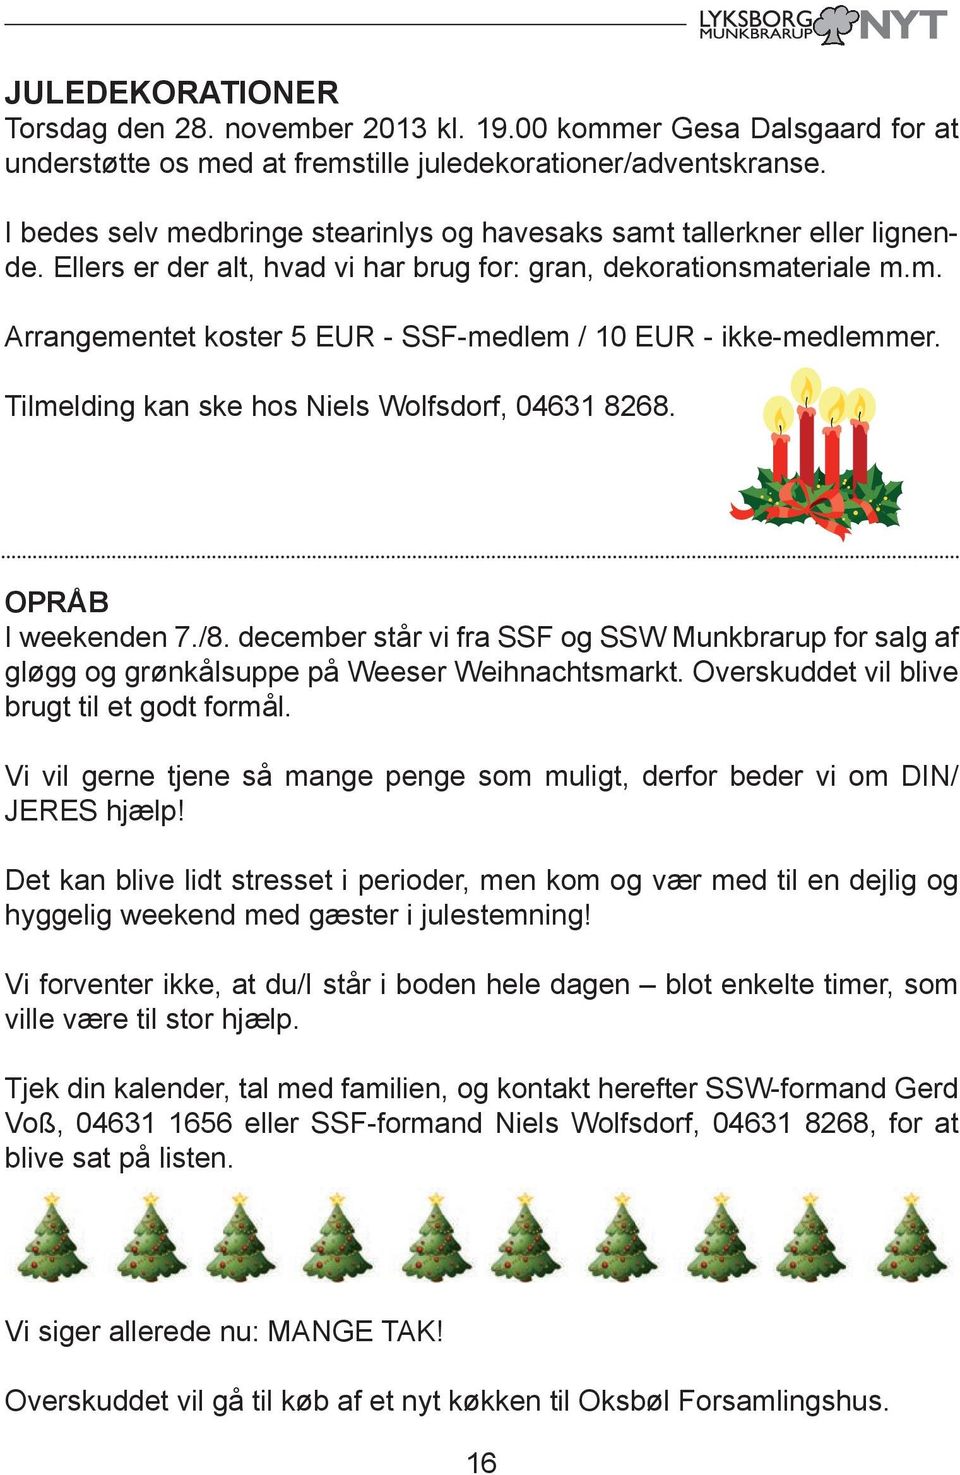 Tilmelding kan ske hos Niels Wolfsdorf, 04631 8268. OPRÅB I weekenden 7./8. december står vi fra SSF og SSW Munkbrarup for salg af gløgg og grønkålsuppe på Weeser Weihnachtsmarkt.